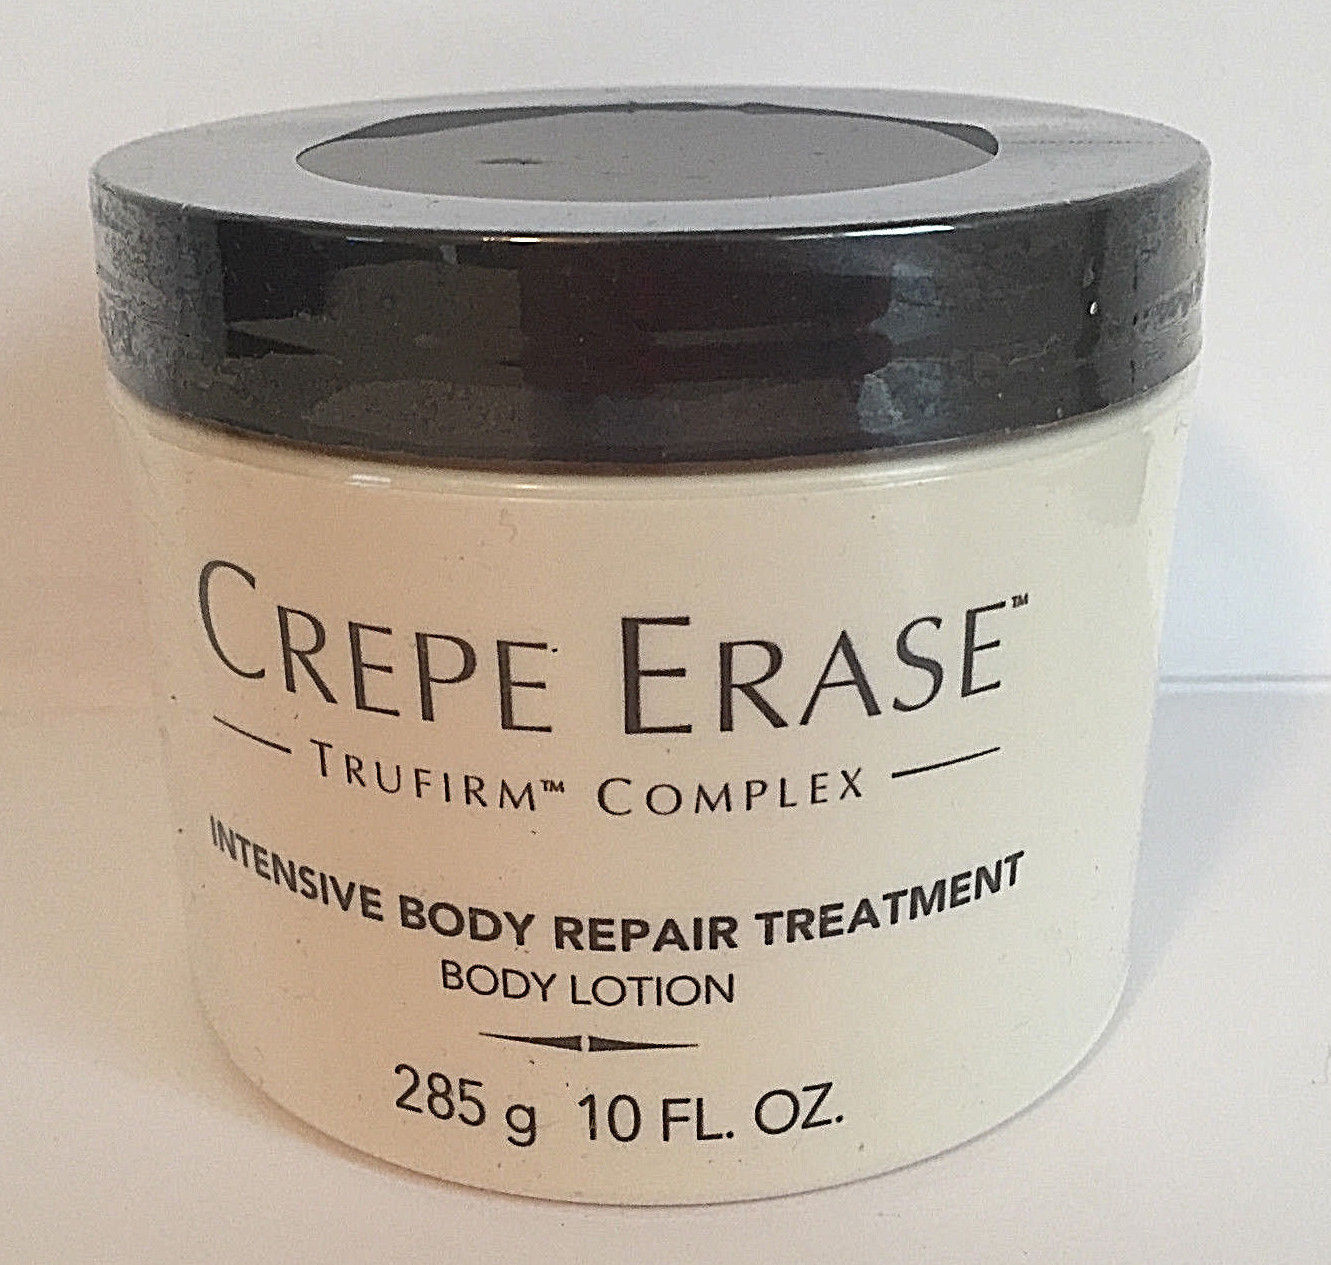 Crepe Erase Intensive Body Repair Treatment 10 oz